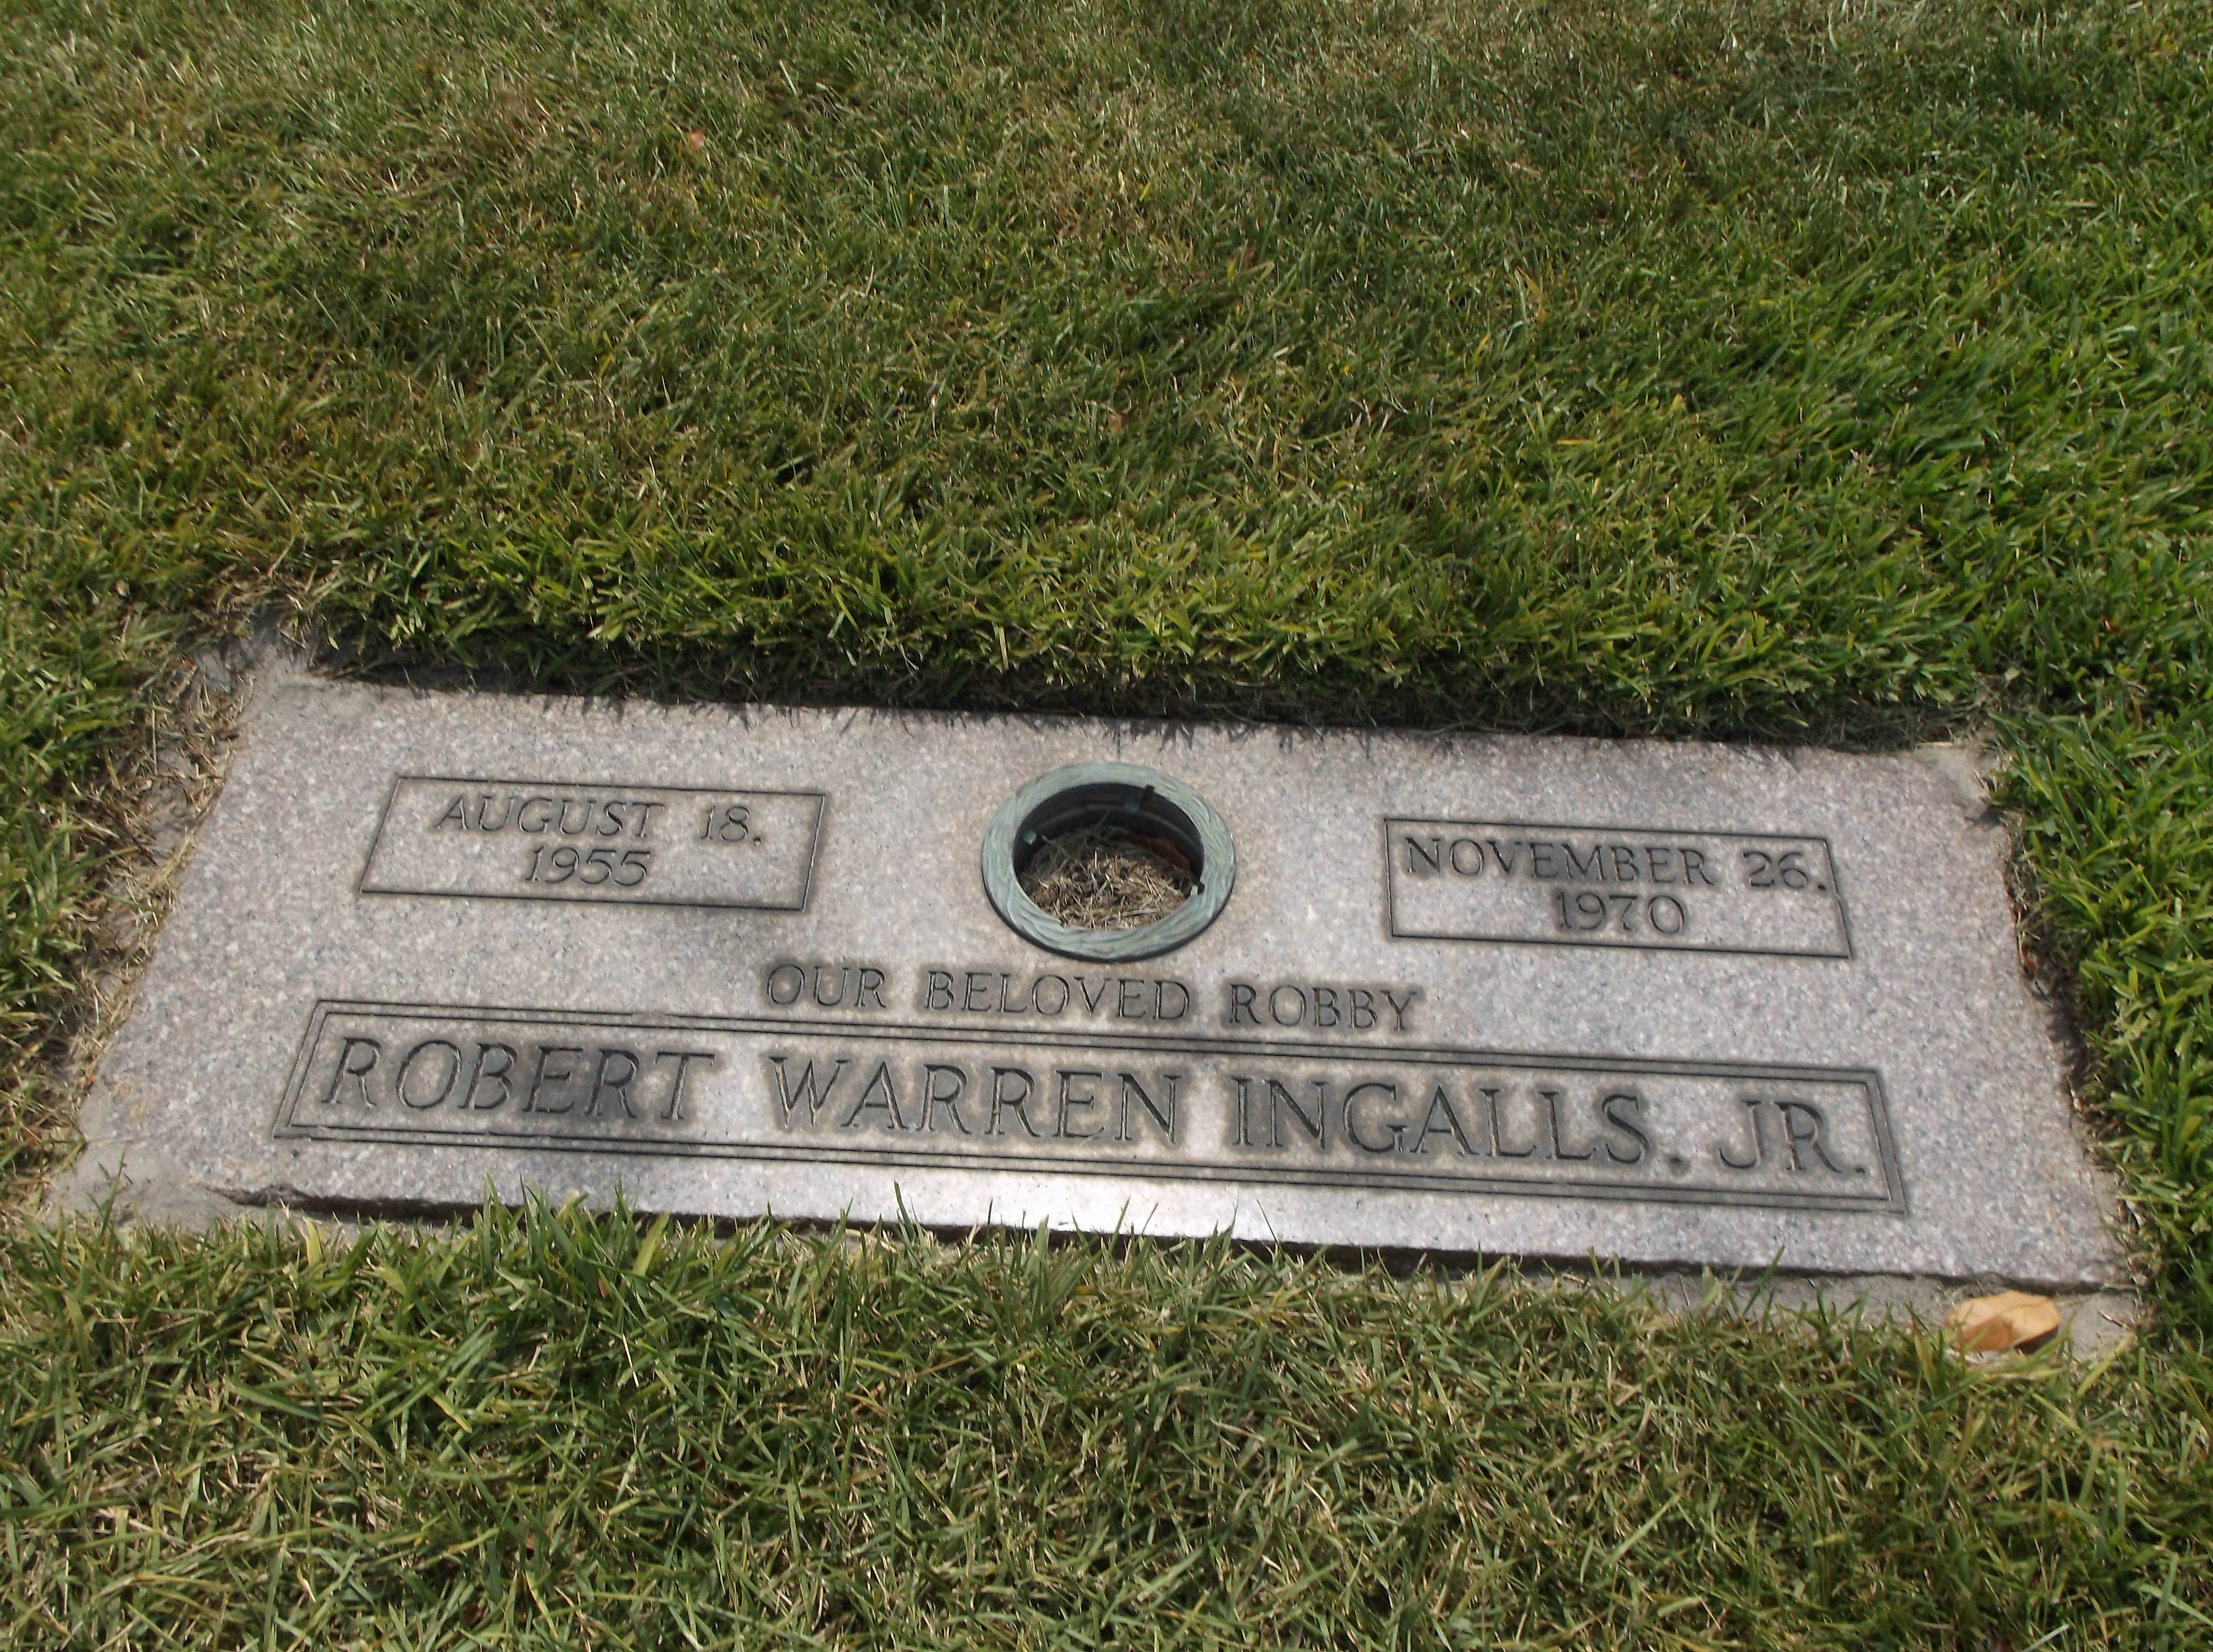 Robert Warren "Robby" Ingalls, Jr